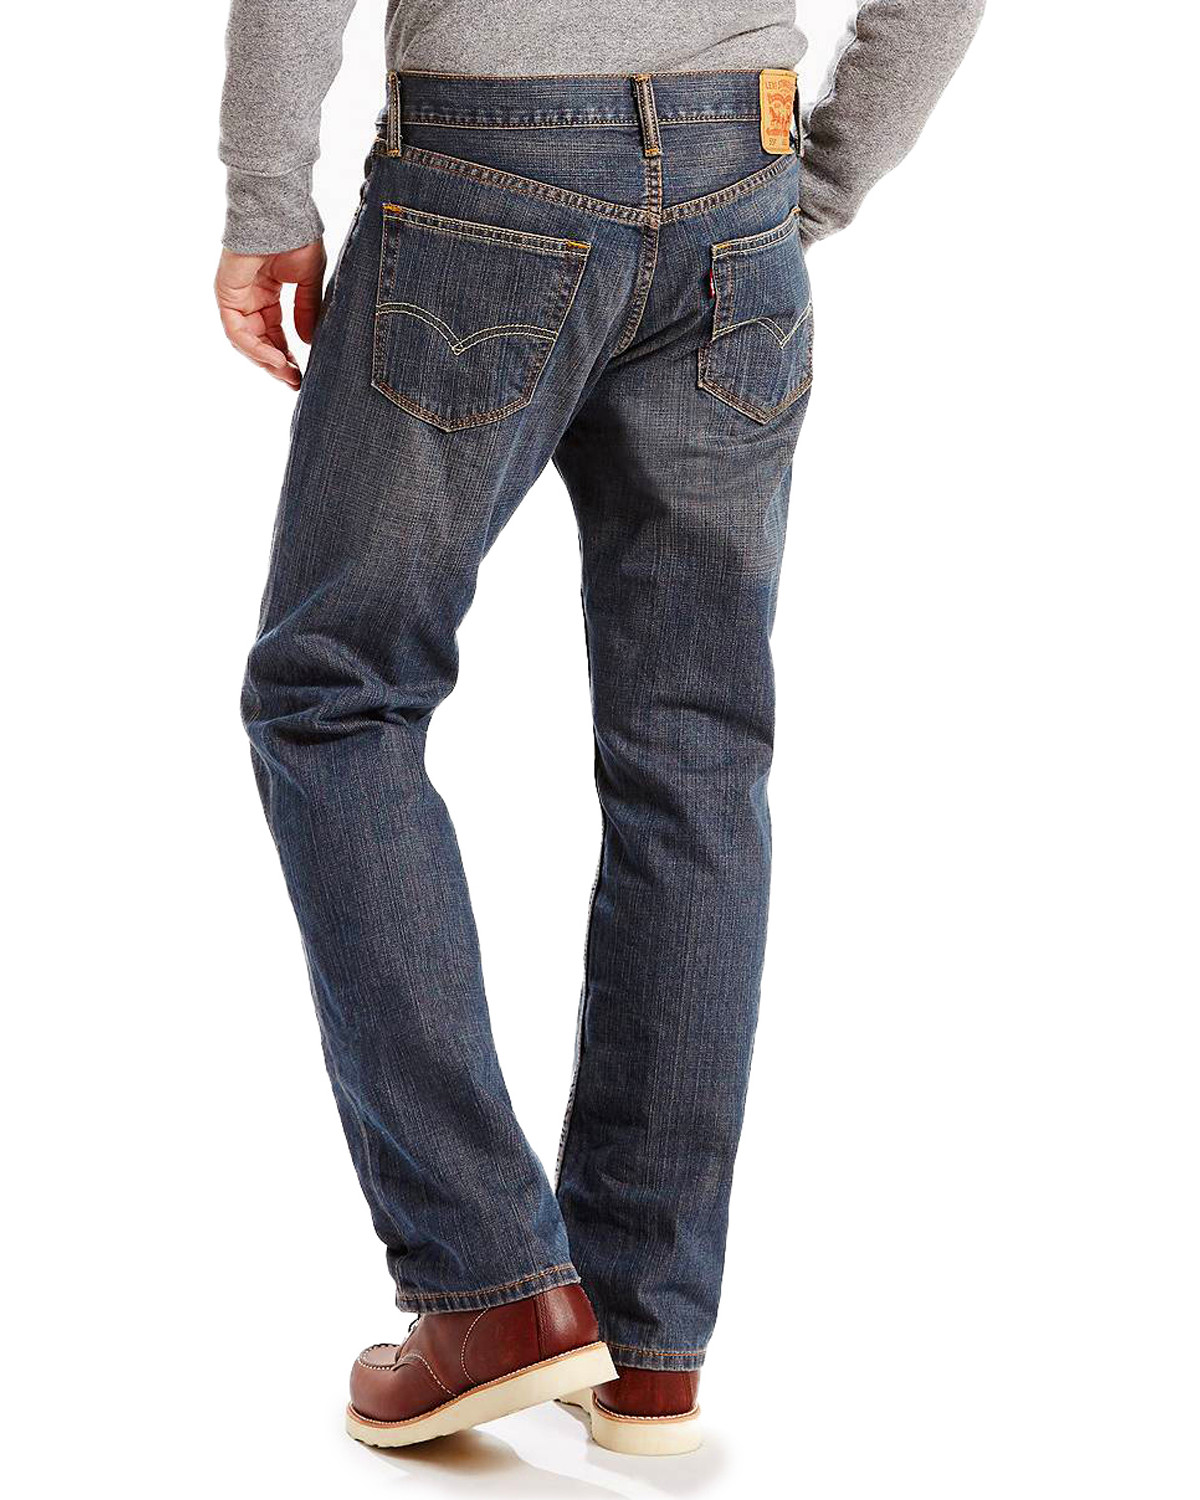 levi's 559 jeans colors